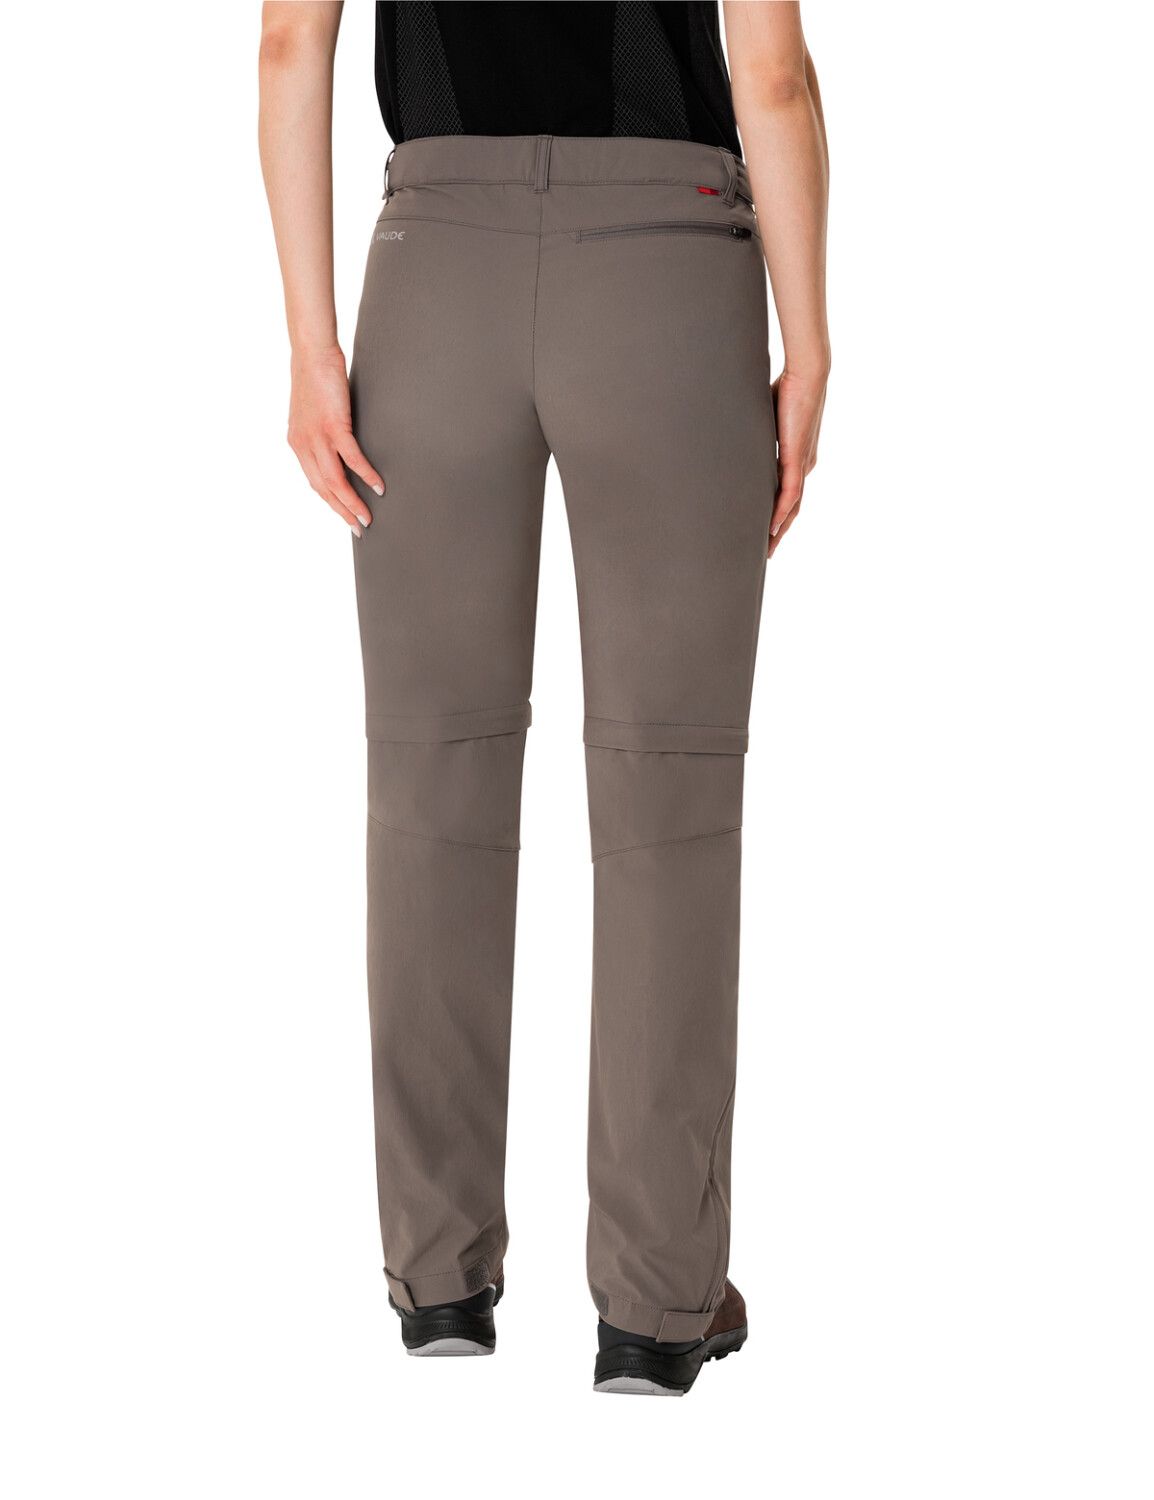 VAUDE Women's Farley Stretch ZO T-Zip Pants (Bild 23)